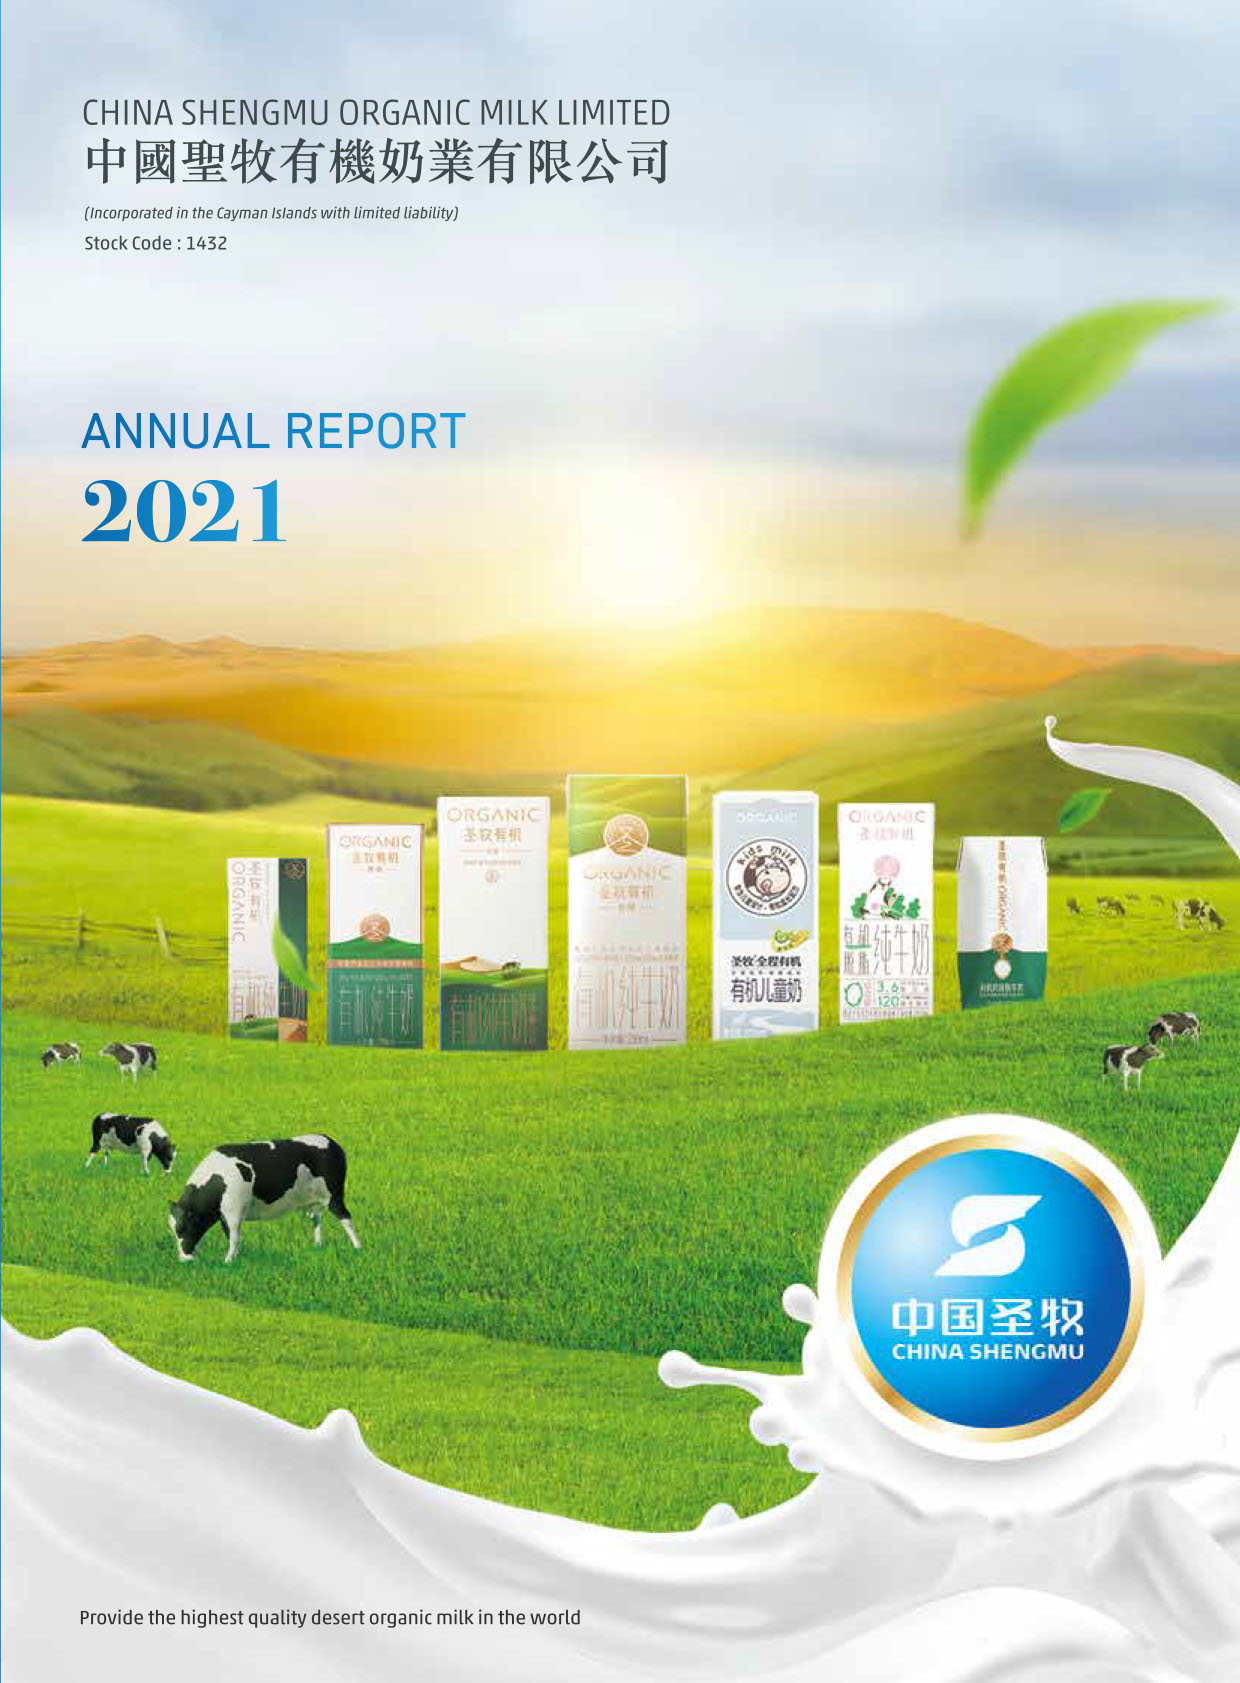 China Shengmu Organic Milk Limited